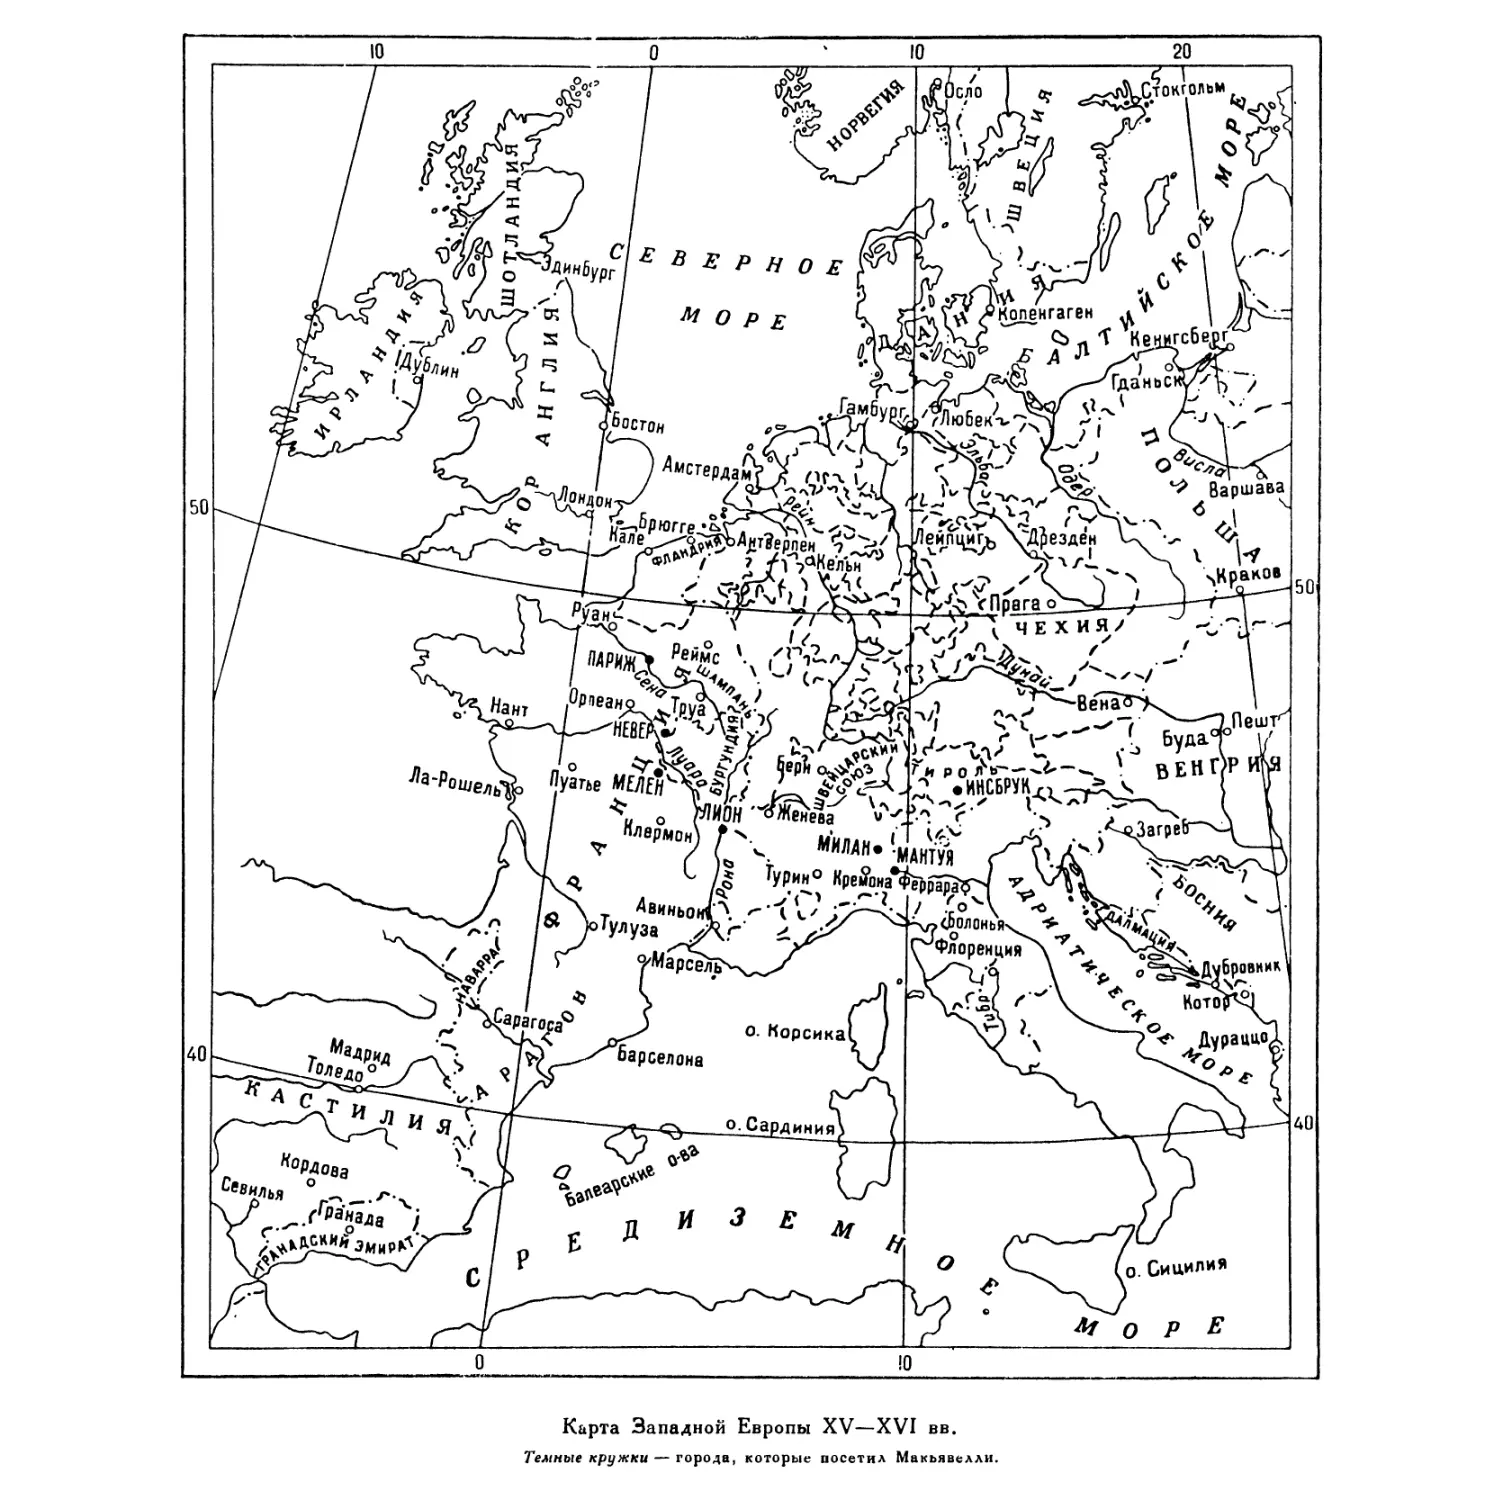 Вкладка. Карта Западной Европы XV—XVI вв.